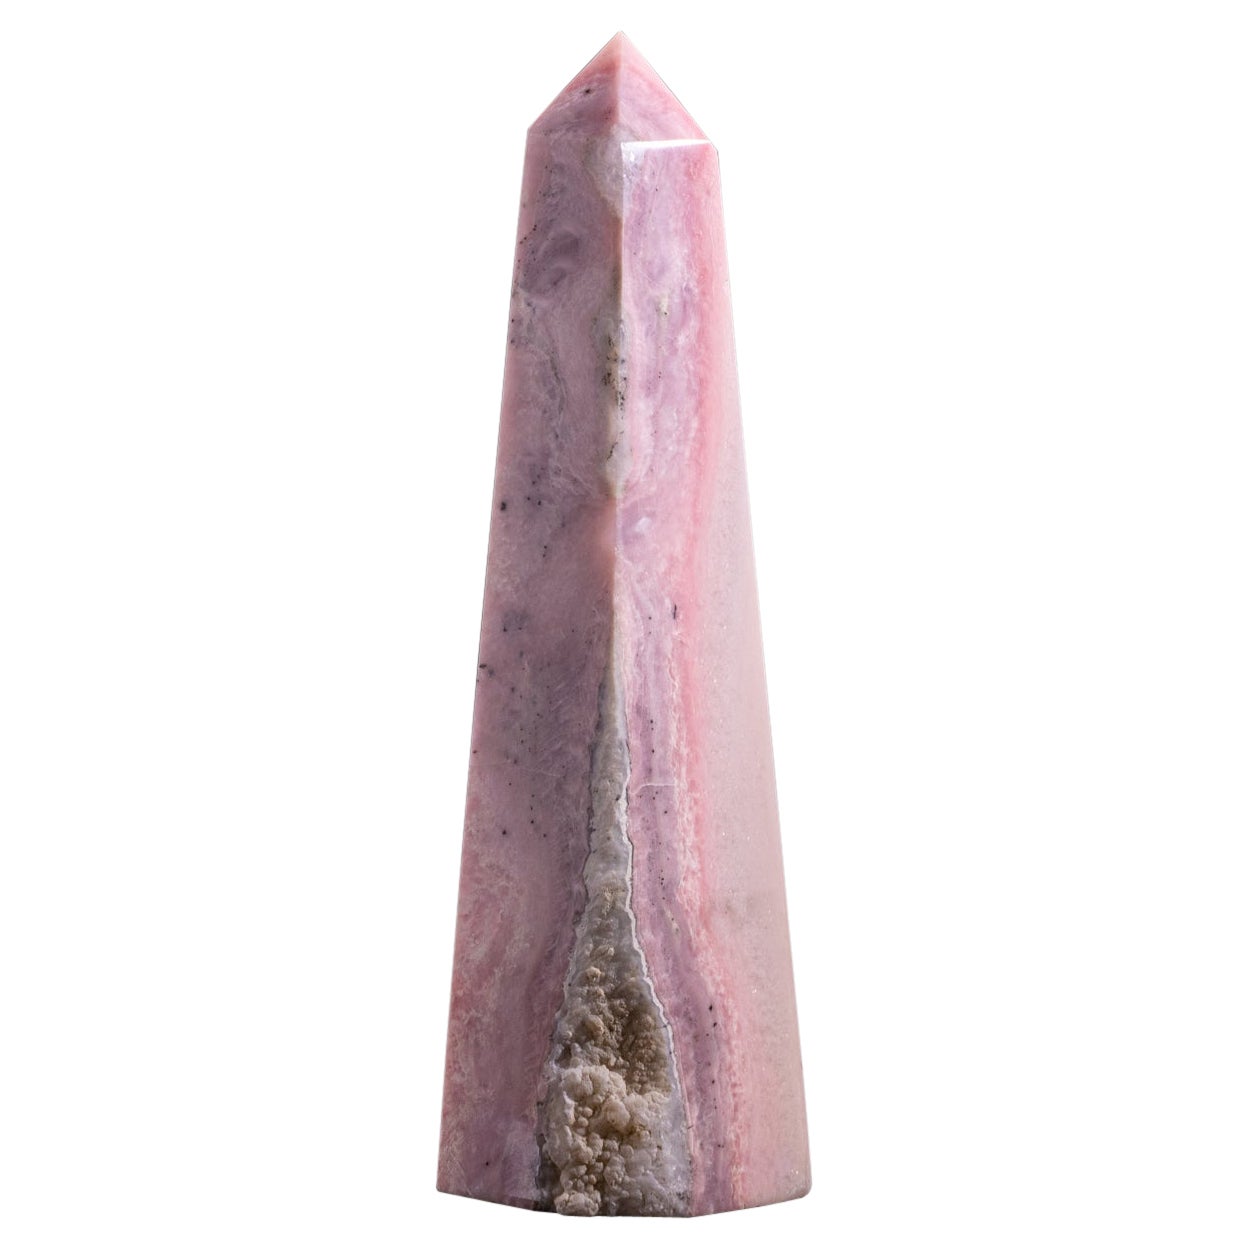 Polished Pink Opal Obelisk (4.2 lbs) For Sale